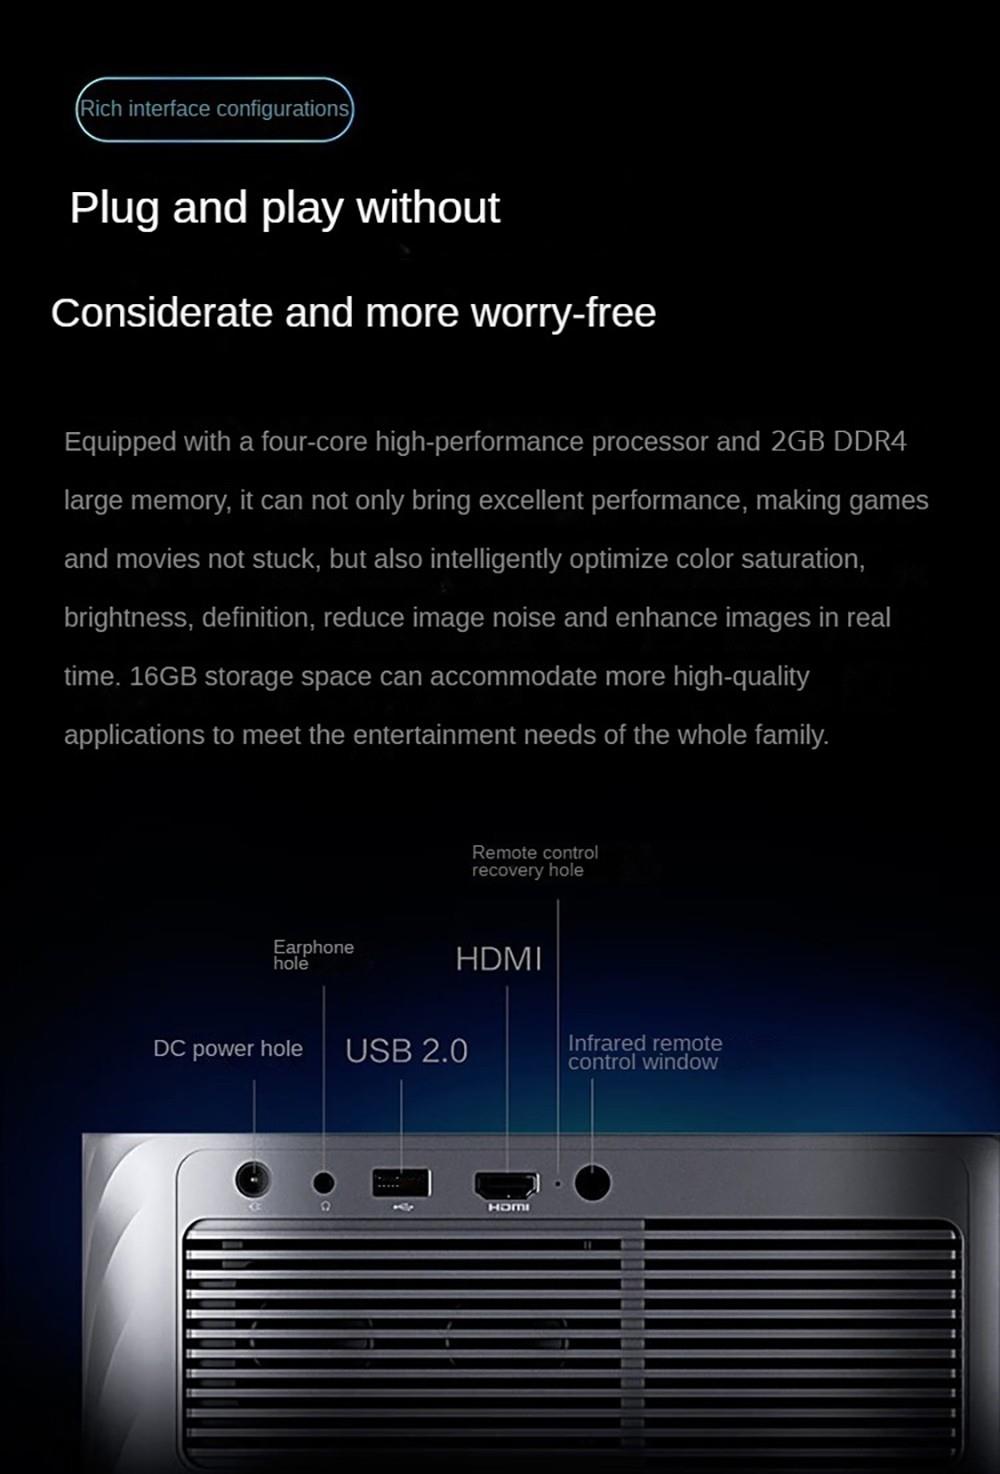 Lenovo Xiaoxin 100 Projektor, 1080P 700ANSI Lumen 2GB 16GB, WiFi 6 Bluetooth 5.0, Autofokus - Schwarz